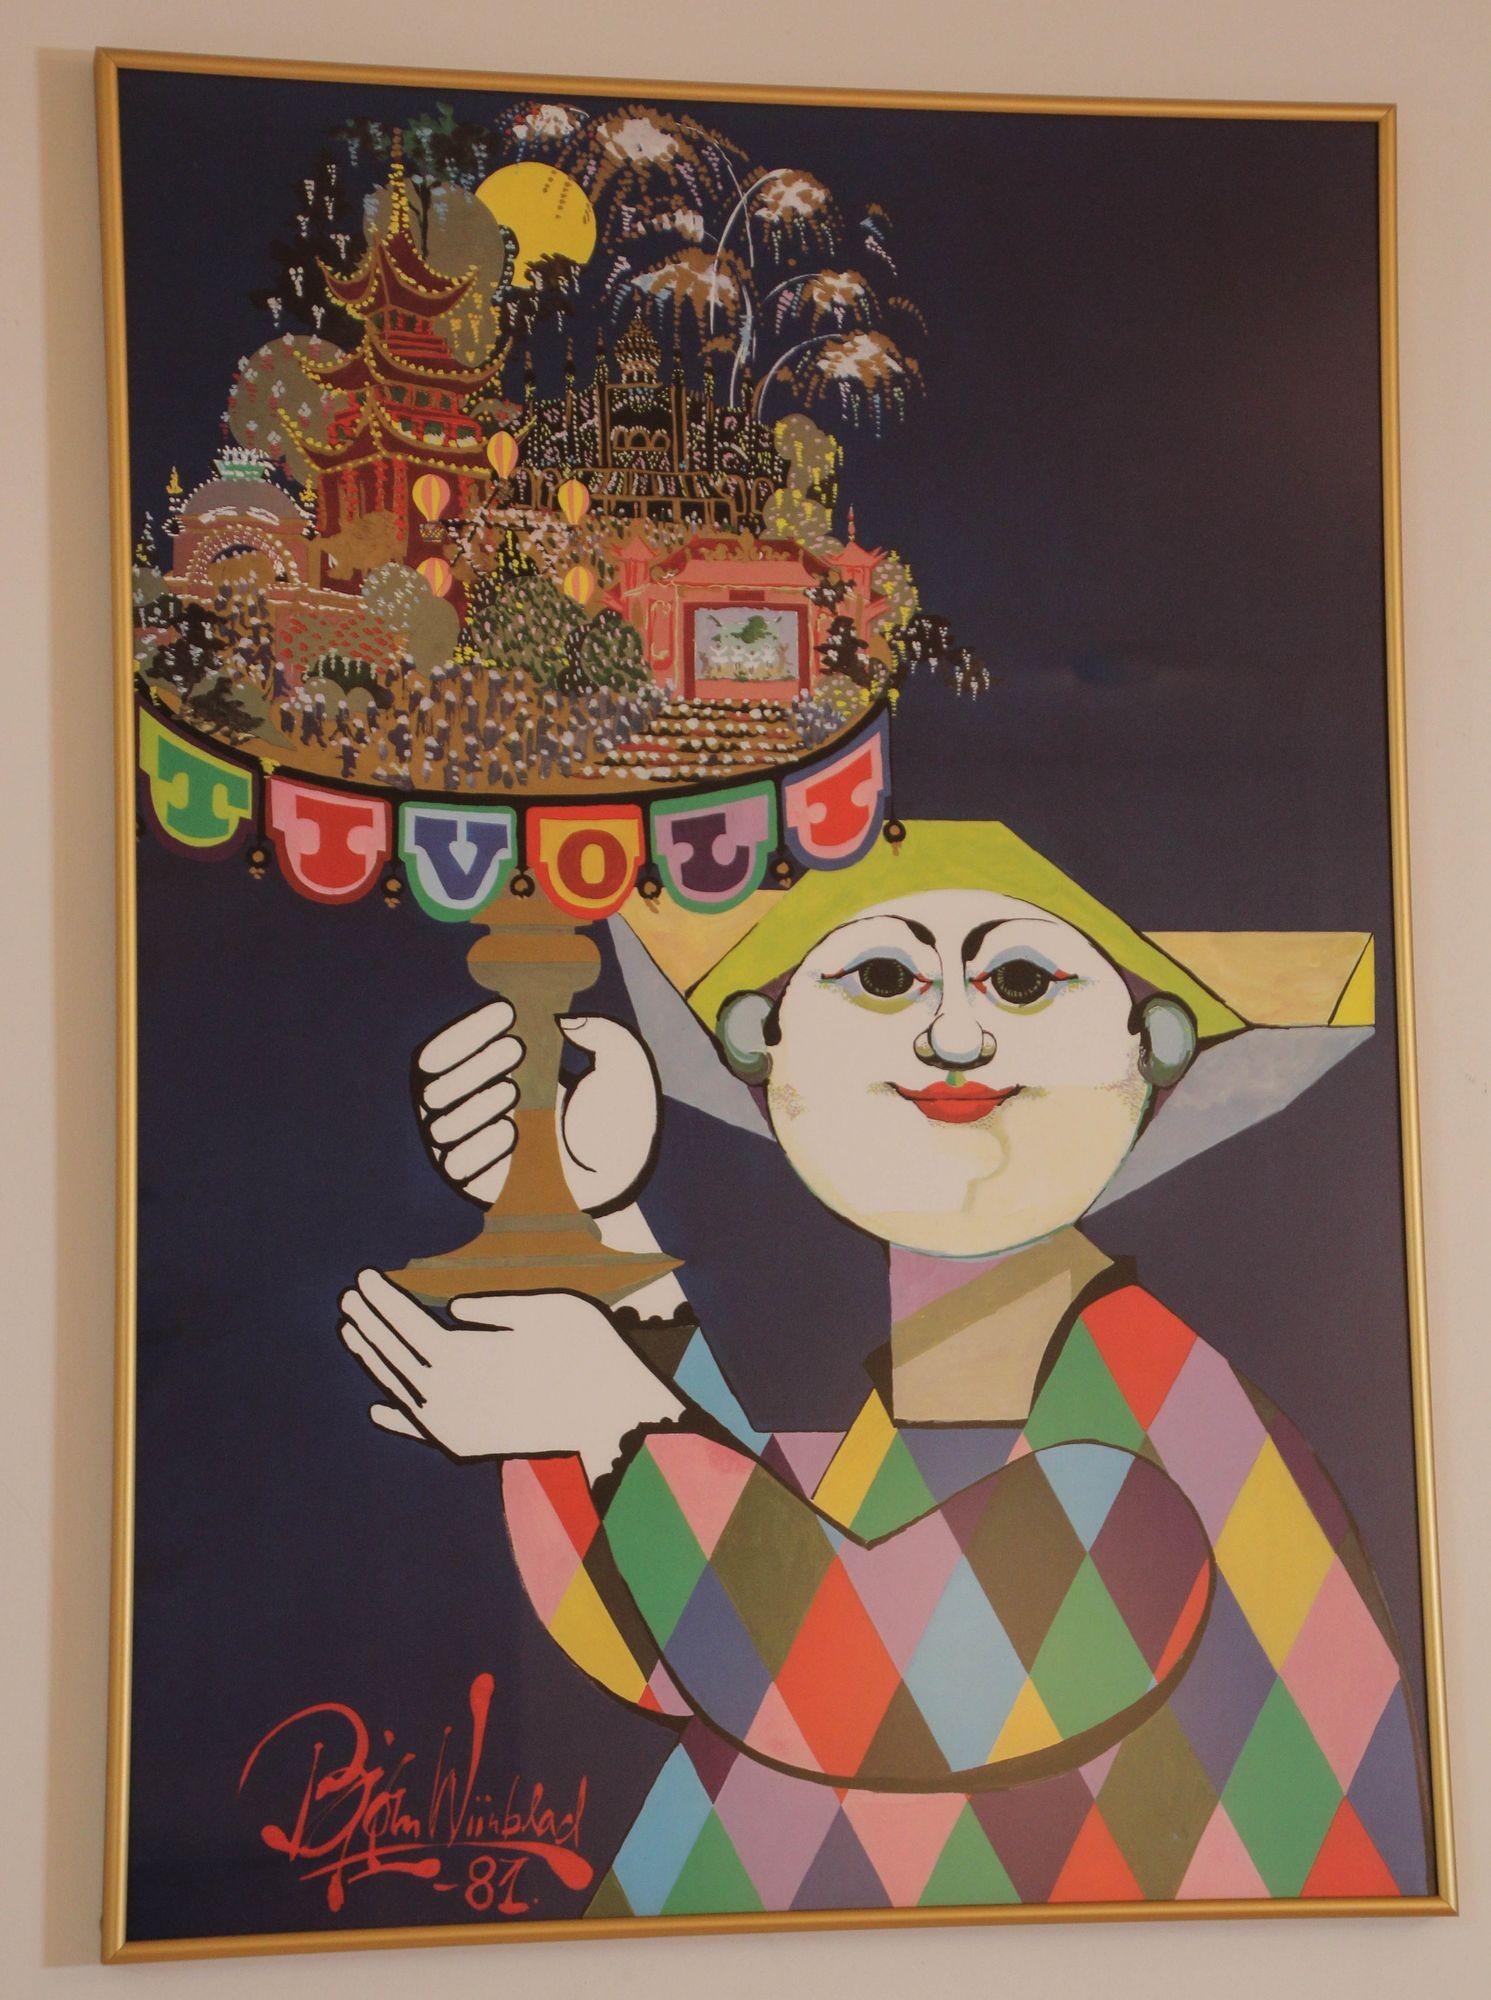 Vintage Bjorn Wiinblad Tivoli Gärten von Kopenhagen, Dänemark gerahmtes Poster.
Vintage Plakat gedruckt von Permed & Rosengreen und entworfen von Bjorn Wiinblad, das einen Harlekin zeigt, der für die Tivoli Gärten in Kopenhagen, Dänemark, wirbt. Die